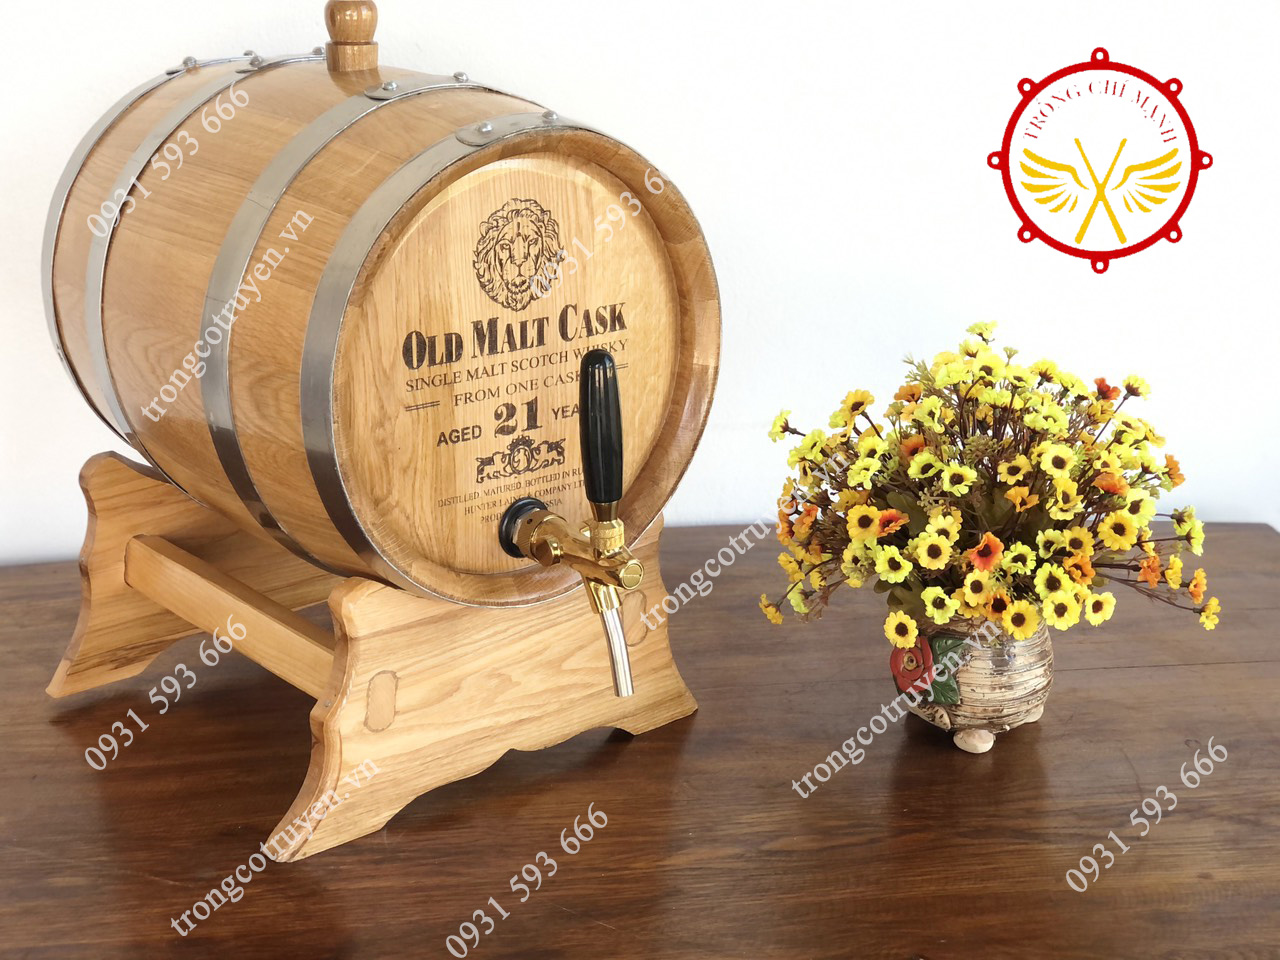 Bom thùng gỗ sồi ngâm rượu ở Nghệ An được sản xuất từ gỗ sồi nhập khẩu Pháp, Mỹ, Nga, Ý